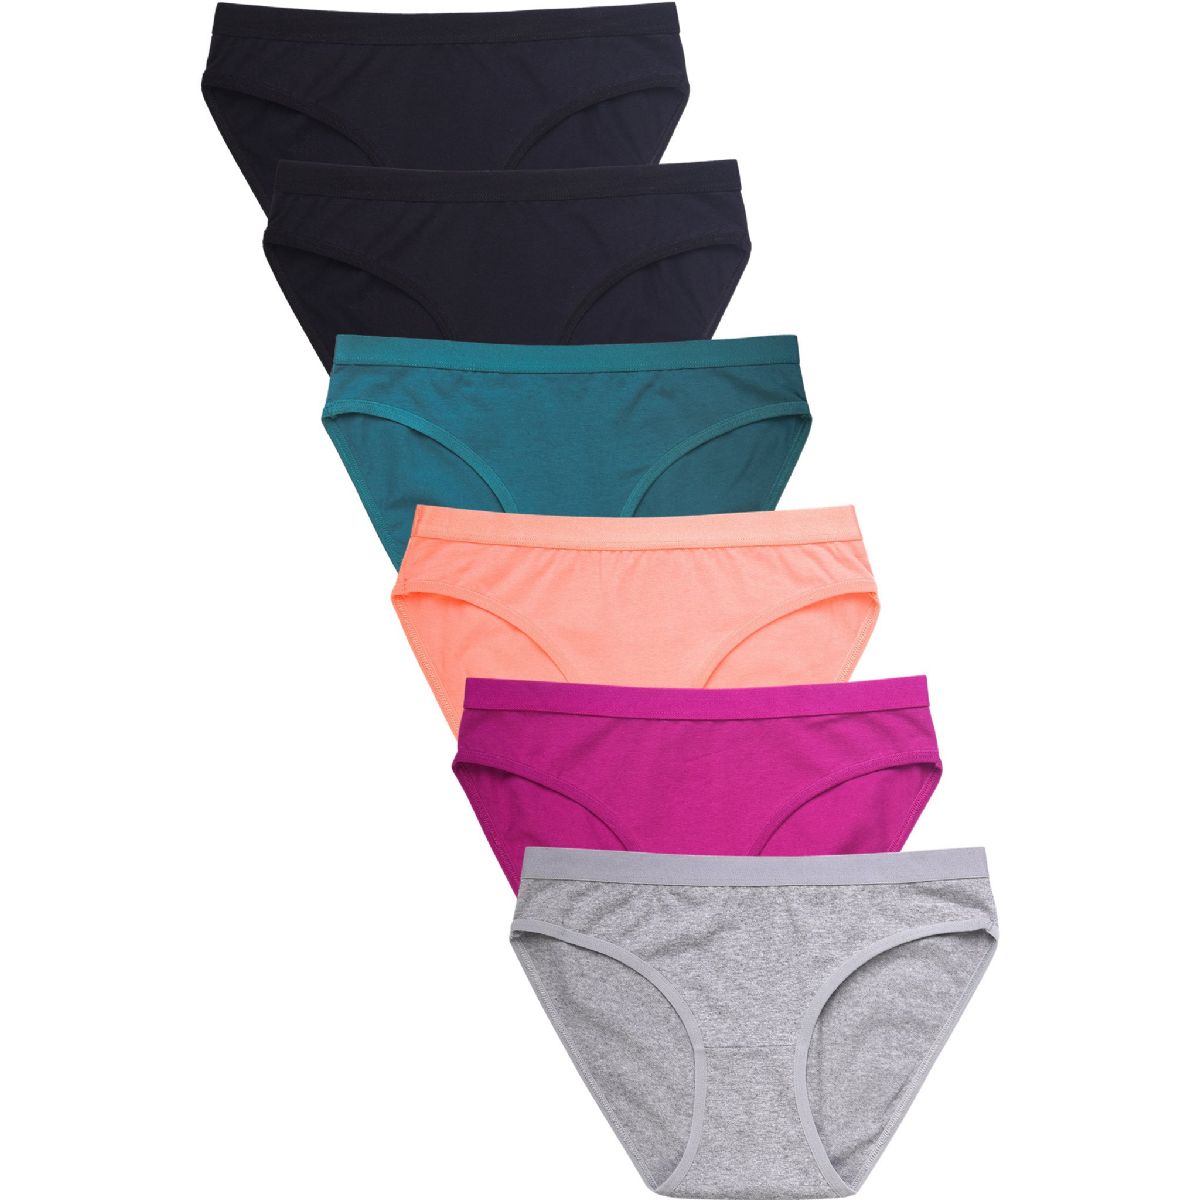 432 Pieces Mamia Ladies Nylon Bikini Panty - Womens Panties & Underwear -  at 